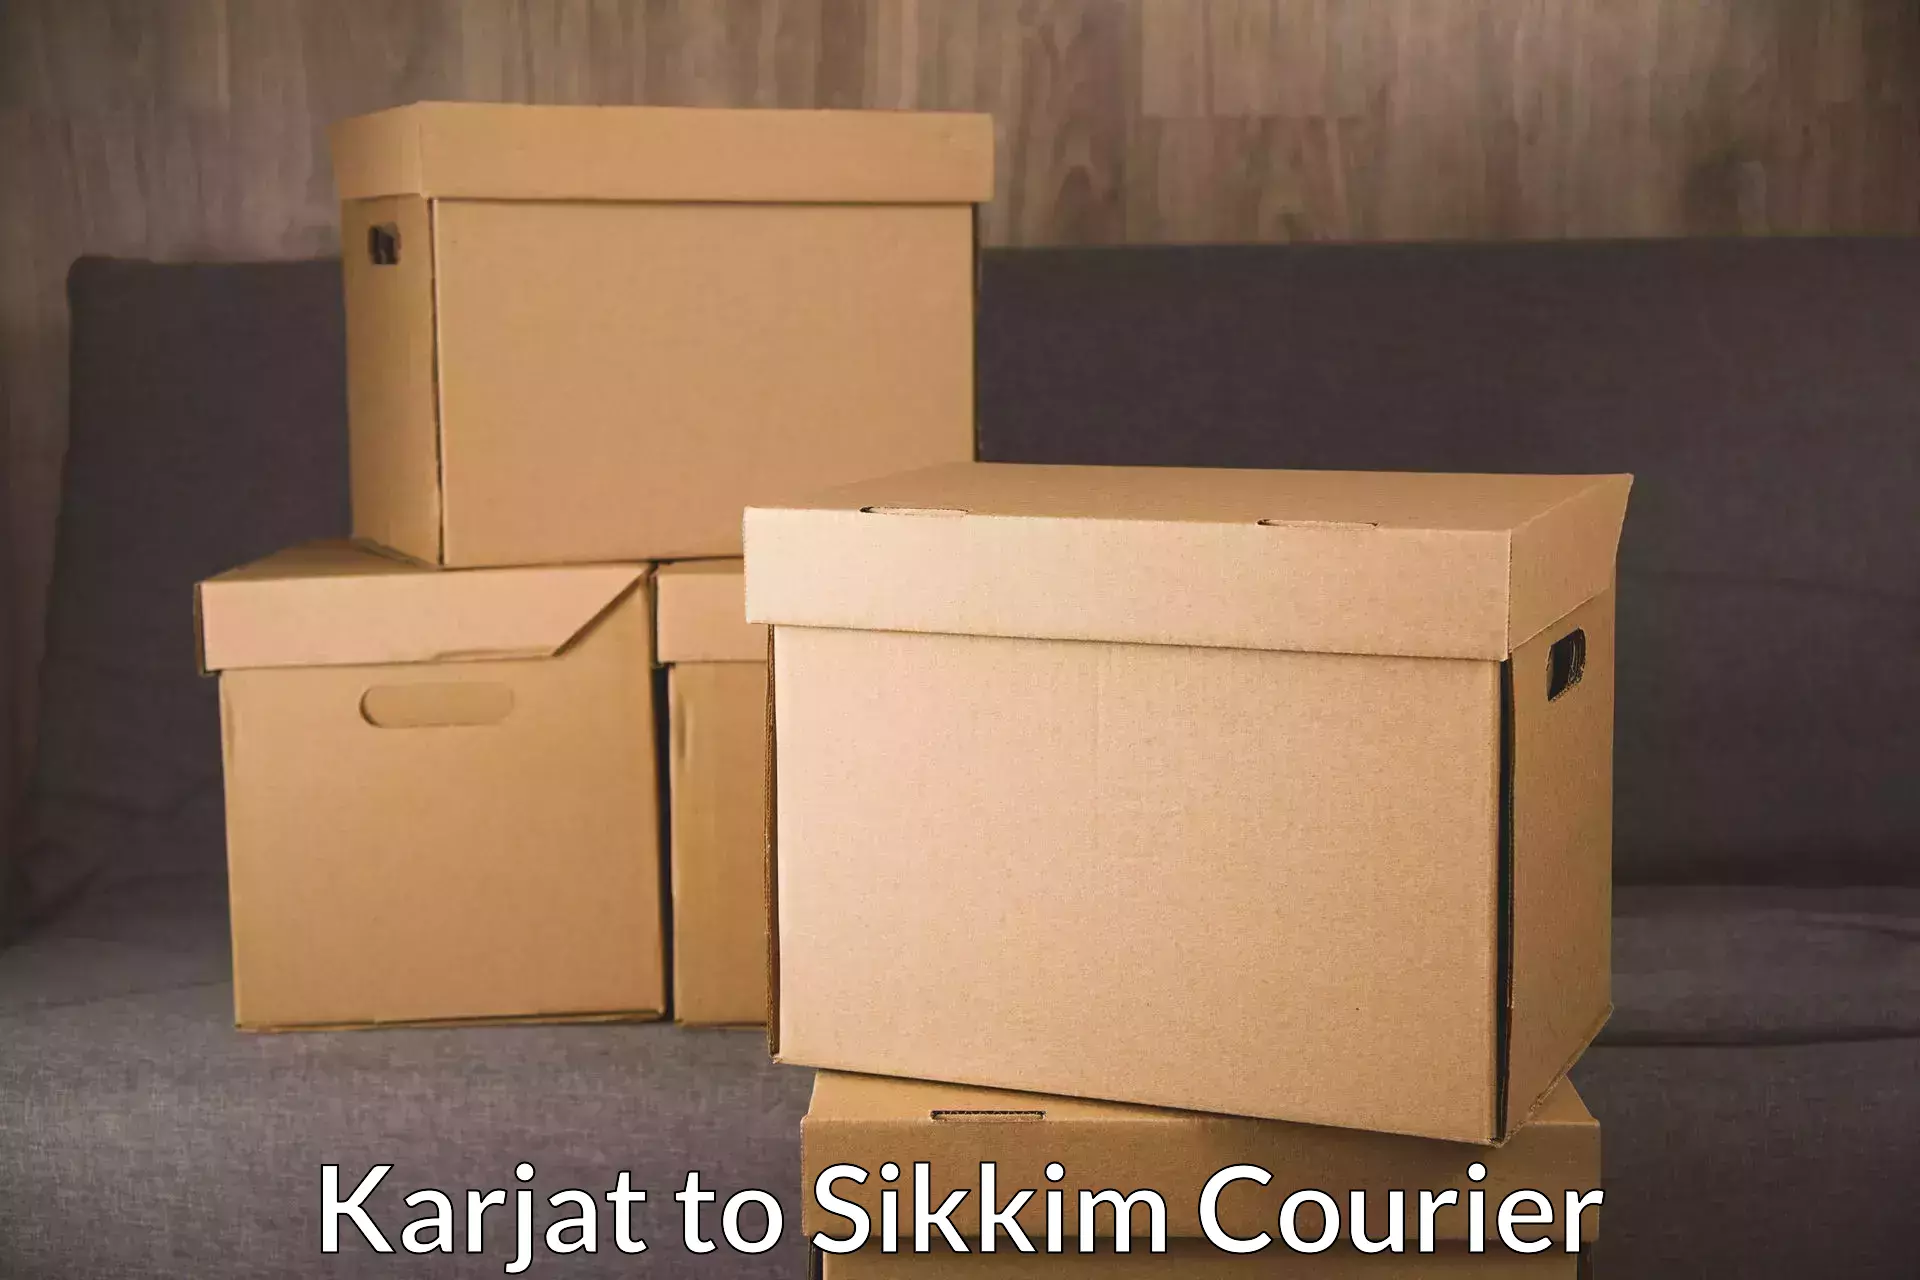 Express logistics providers Karjat to Sikkim